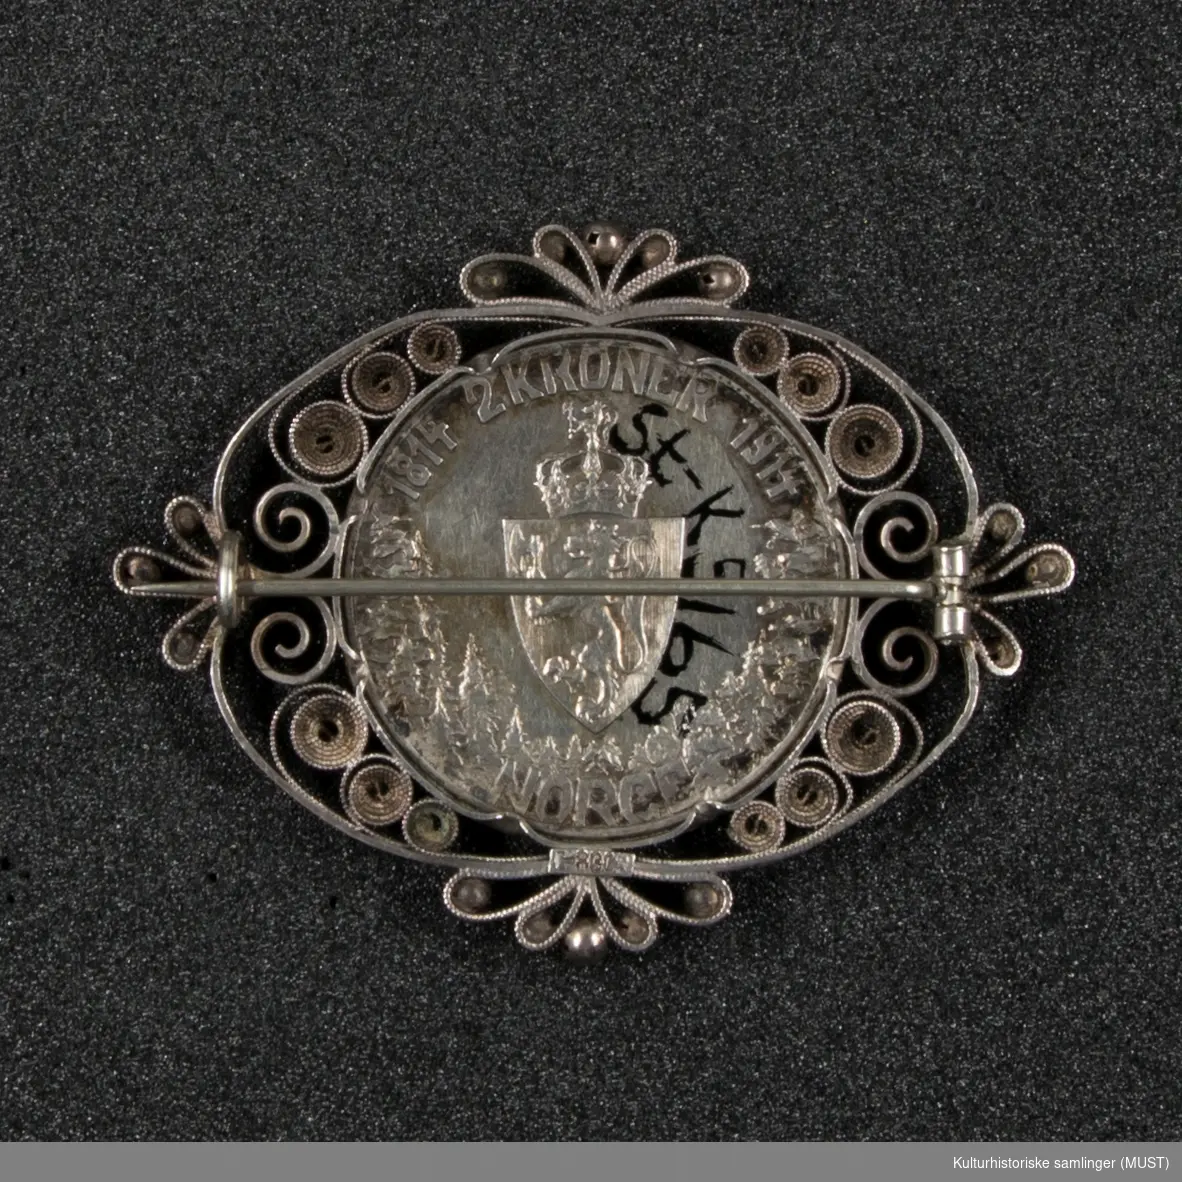 Brosje laget av en 2 kroning fra 1914. Myntens har på den ene siden Norges våpenskjold; løve med krone og på den andre siden vises en kvinne med kjole. Filigrans-dekor rundt mynten.